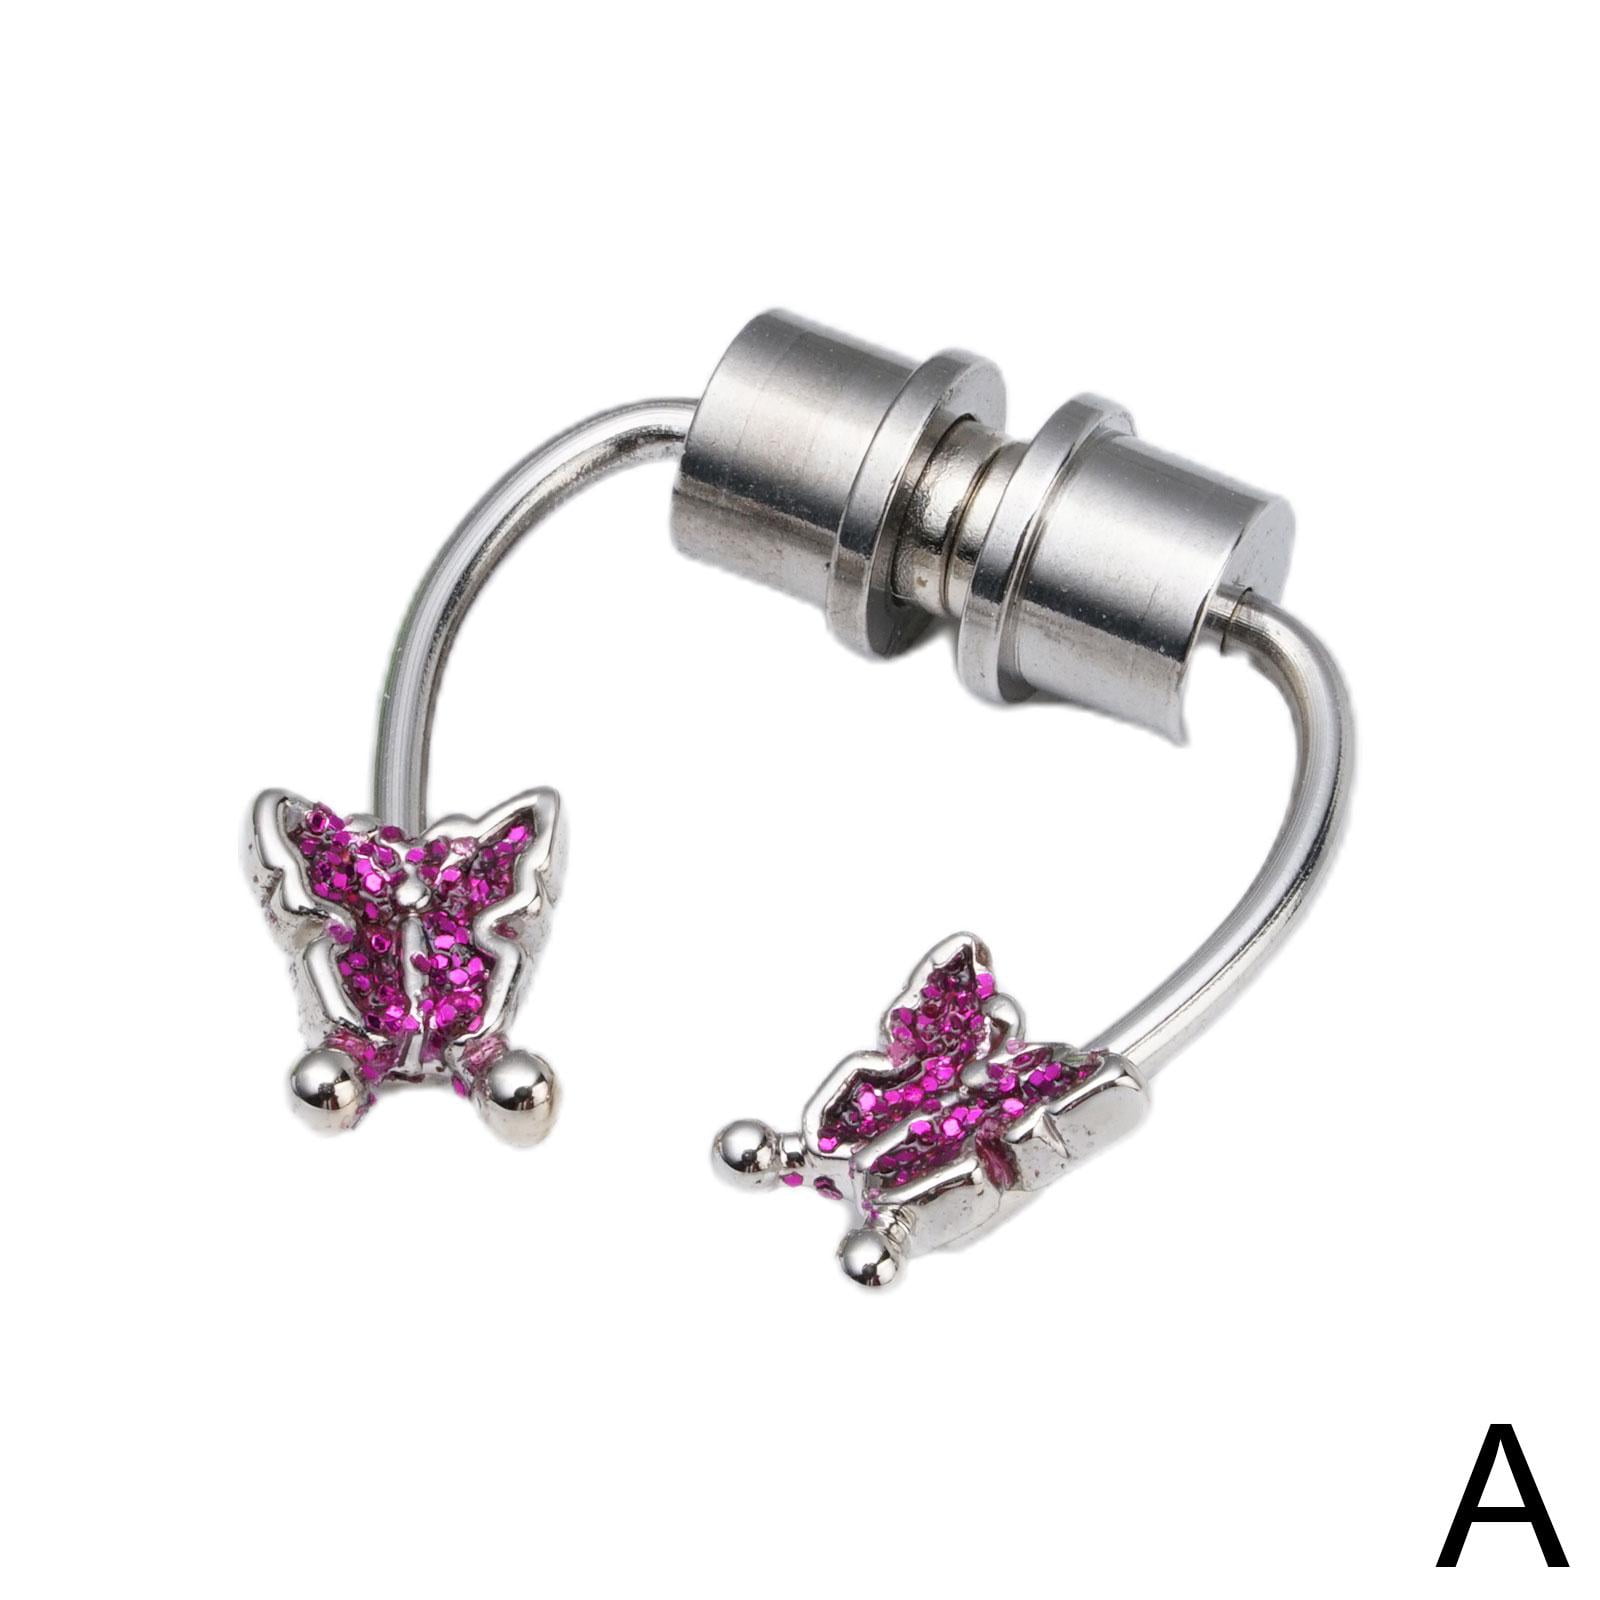 Ja Afgørelse legering PLGEBR Butterfly Magnet Nose Ring,Crystal Magnetic Fake Nose Piercing  Septum Clip On Jewelry C4M0 - Walmart.com